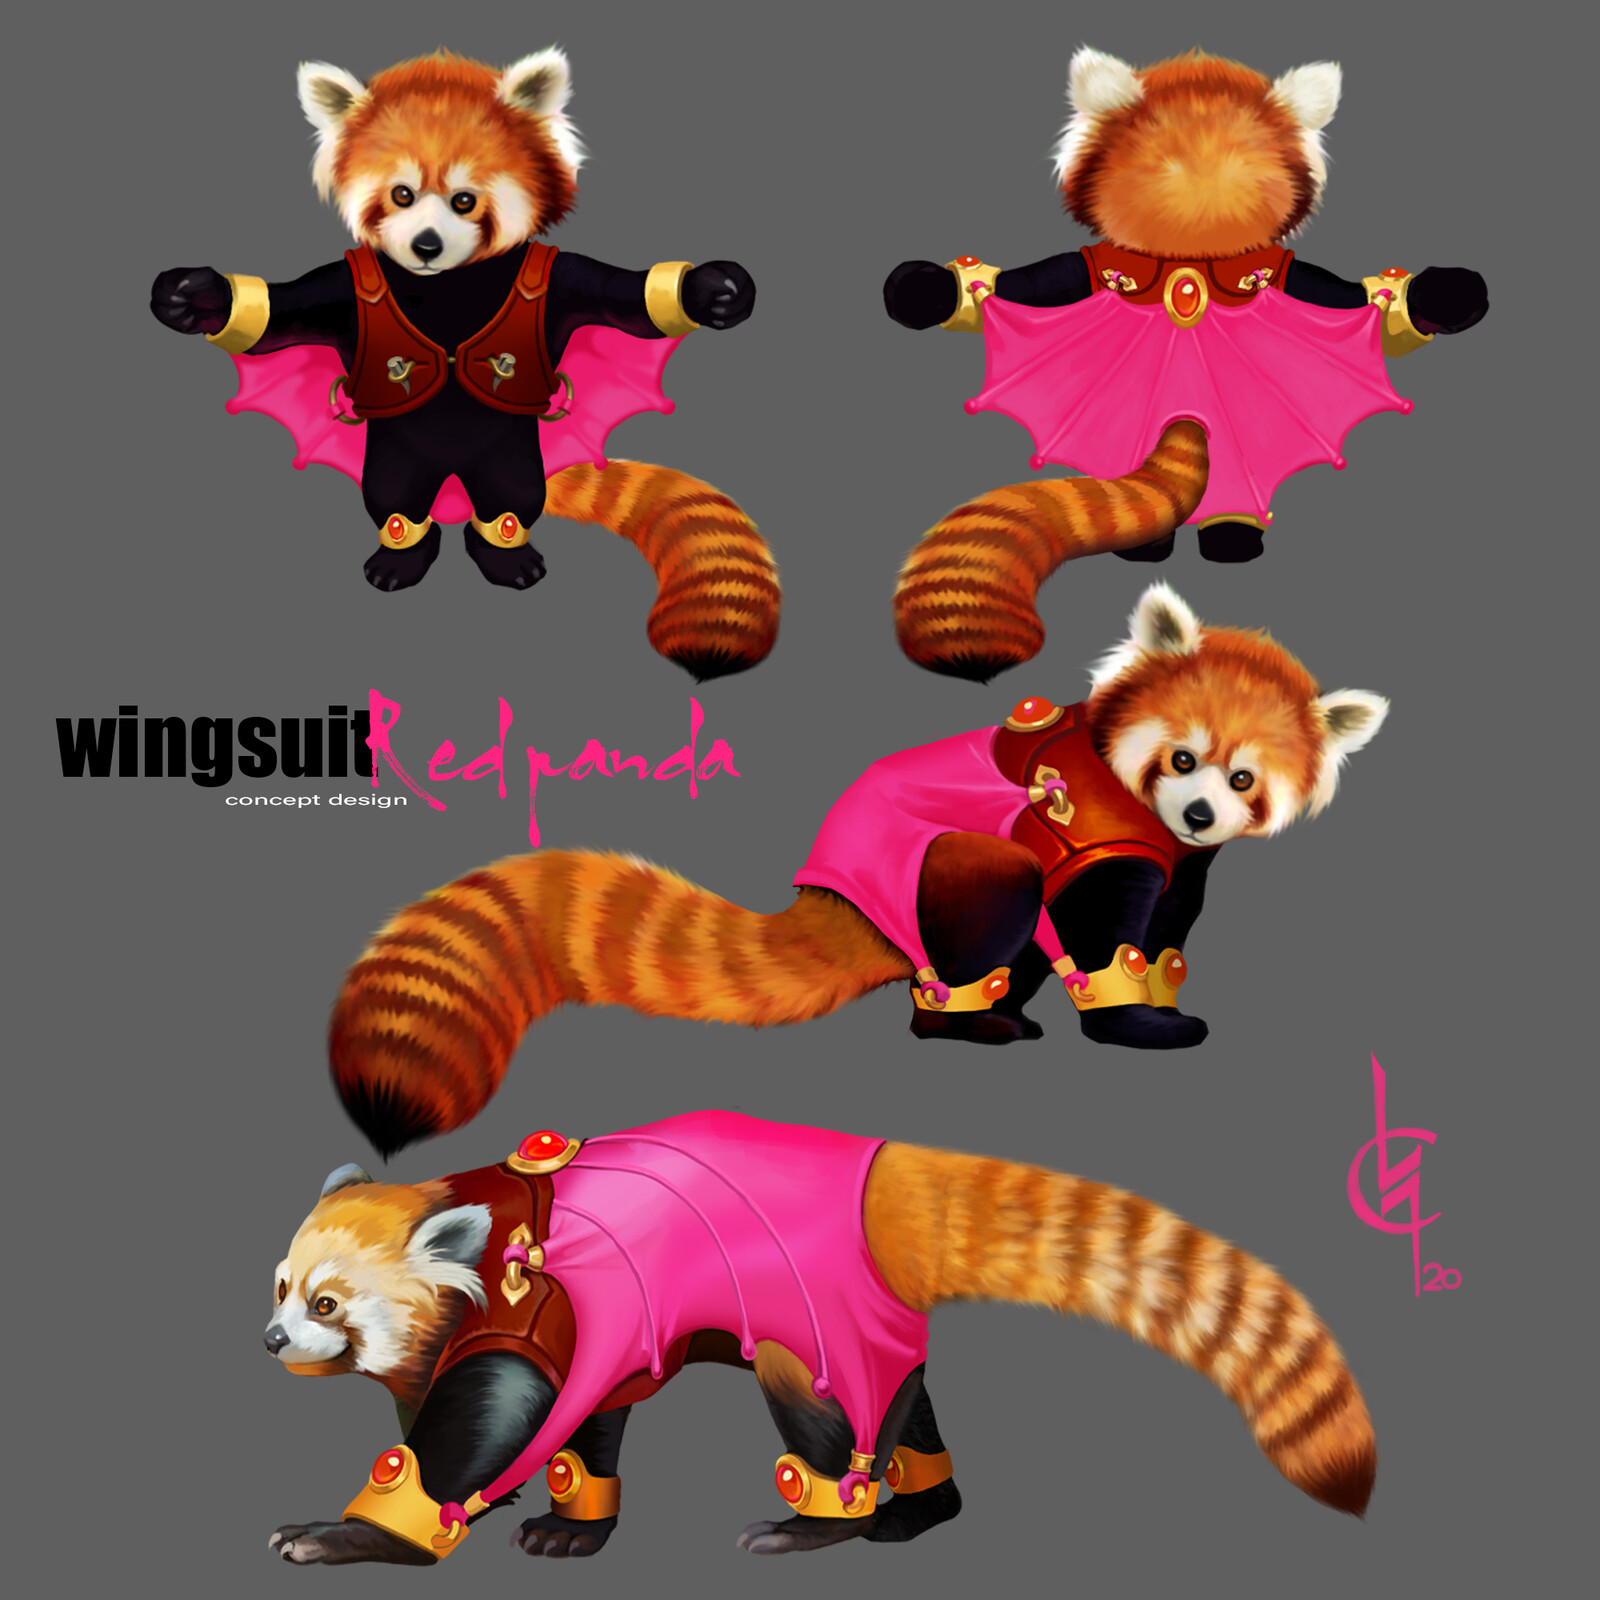 Red panda Wingsuit